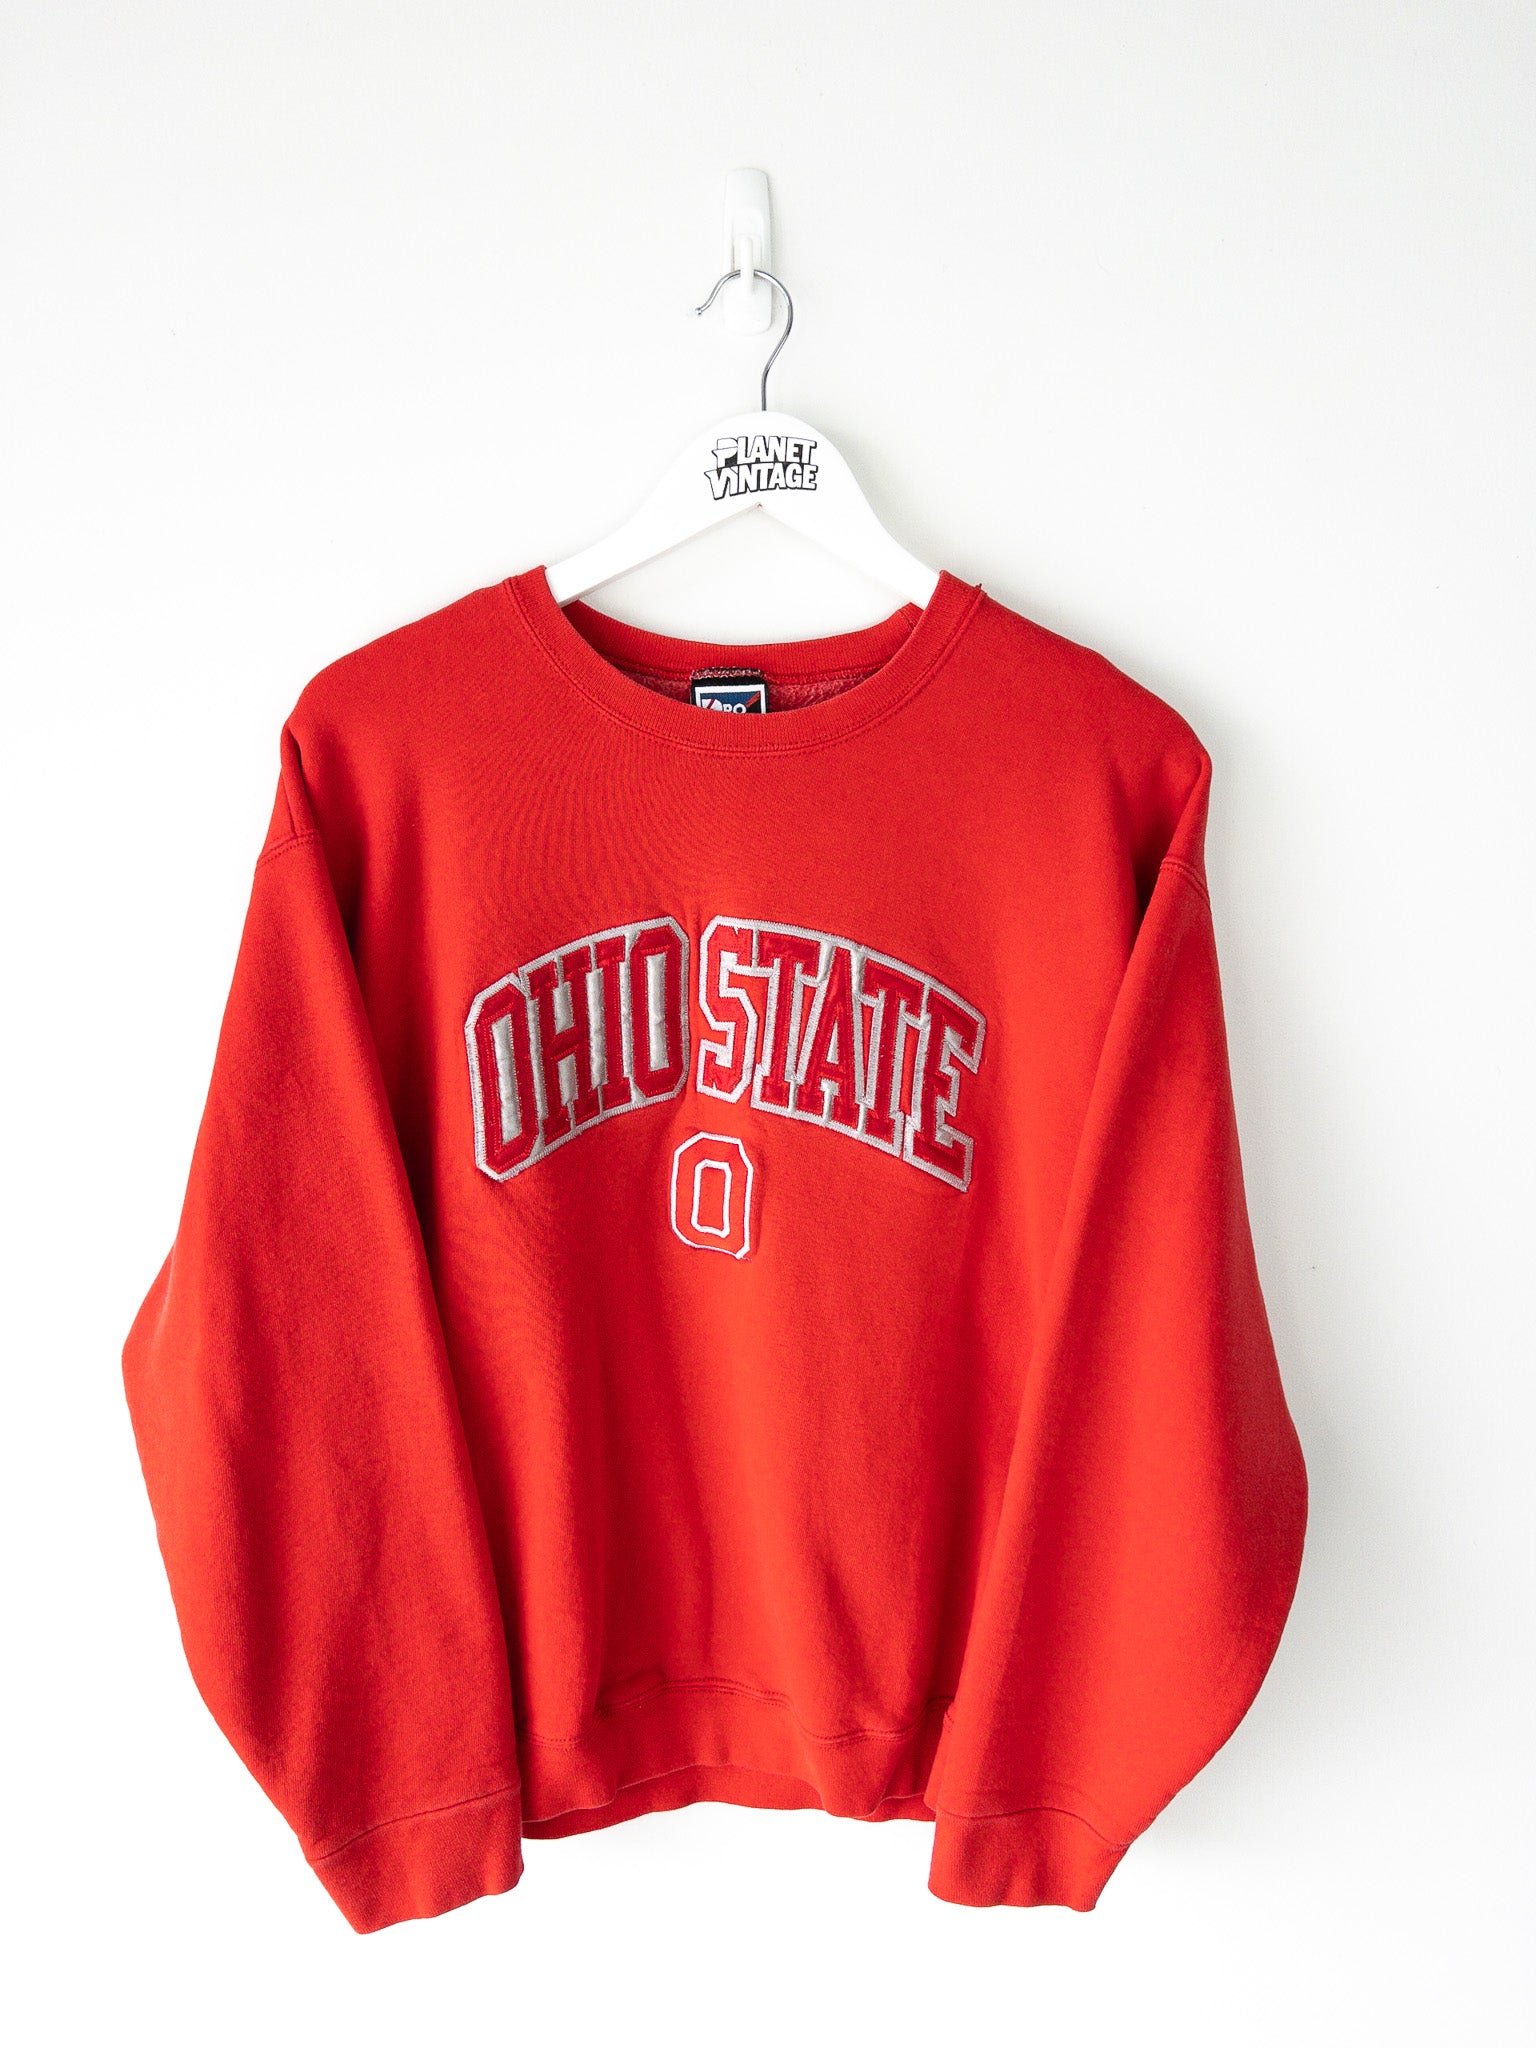 Vintage Ohio State University Sweatshirt (L)